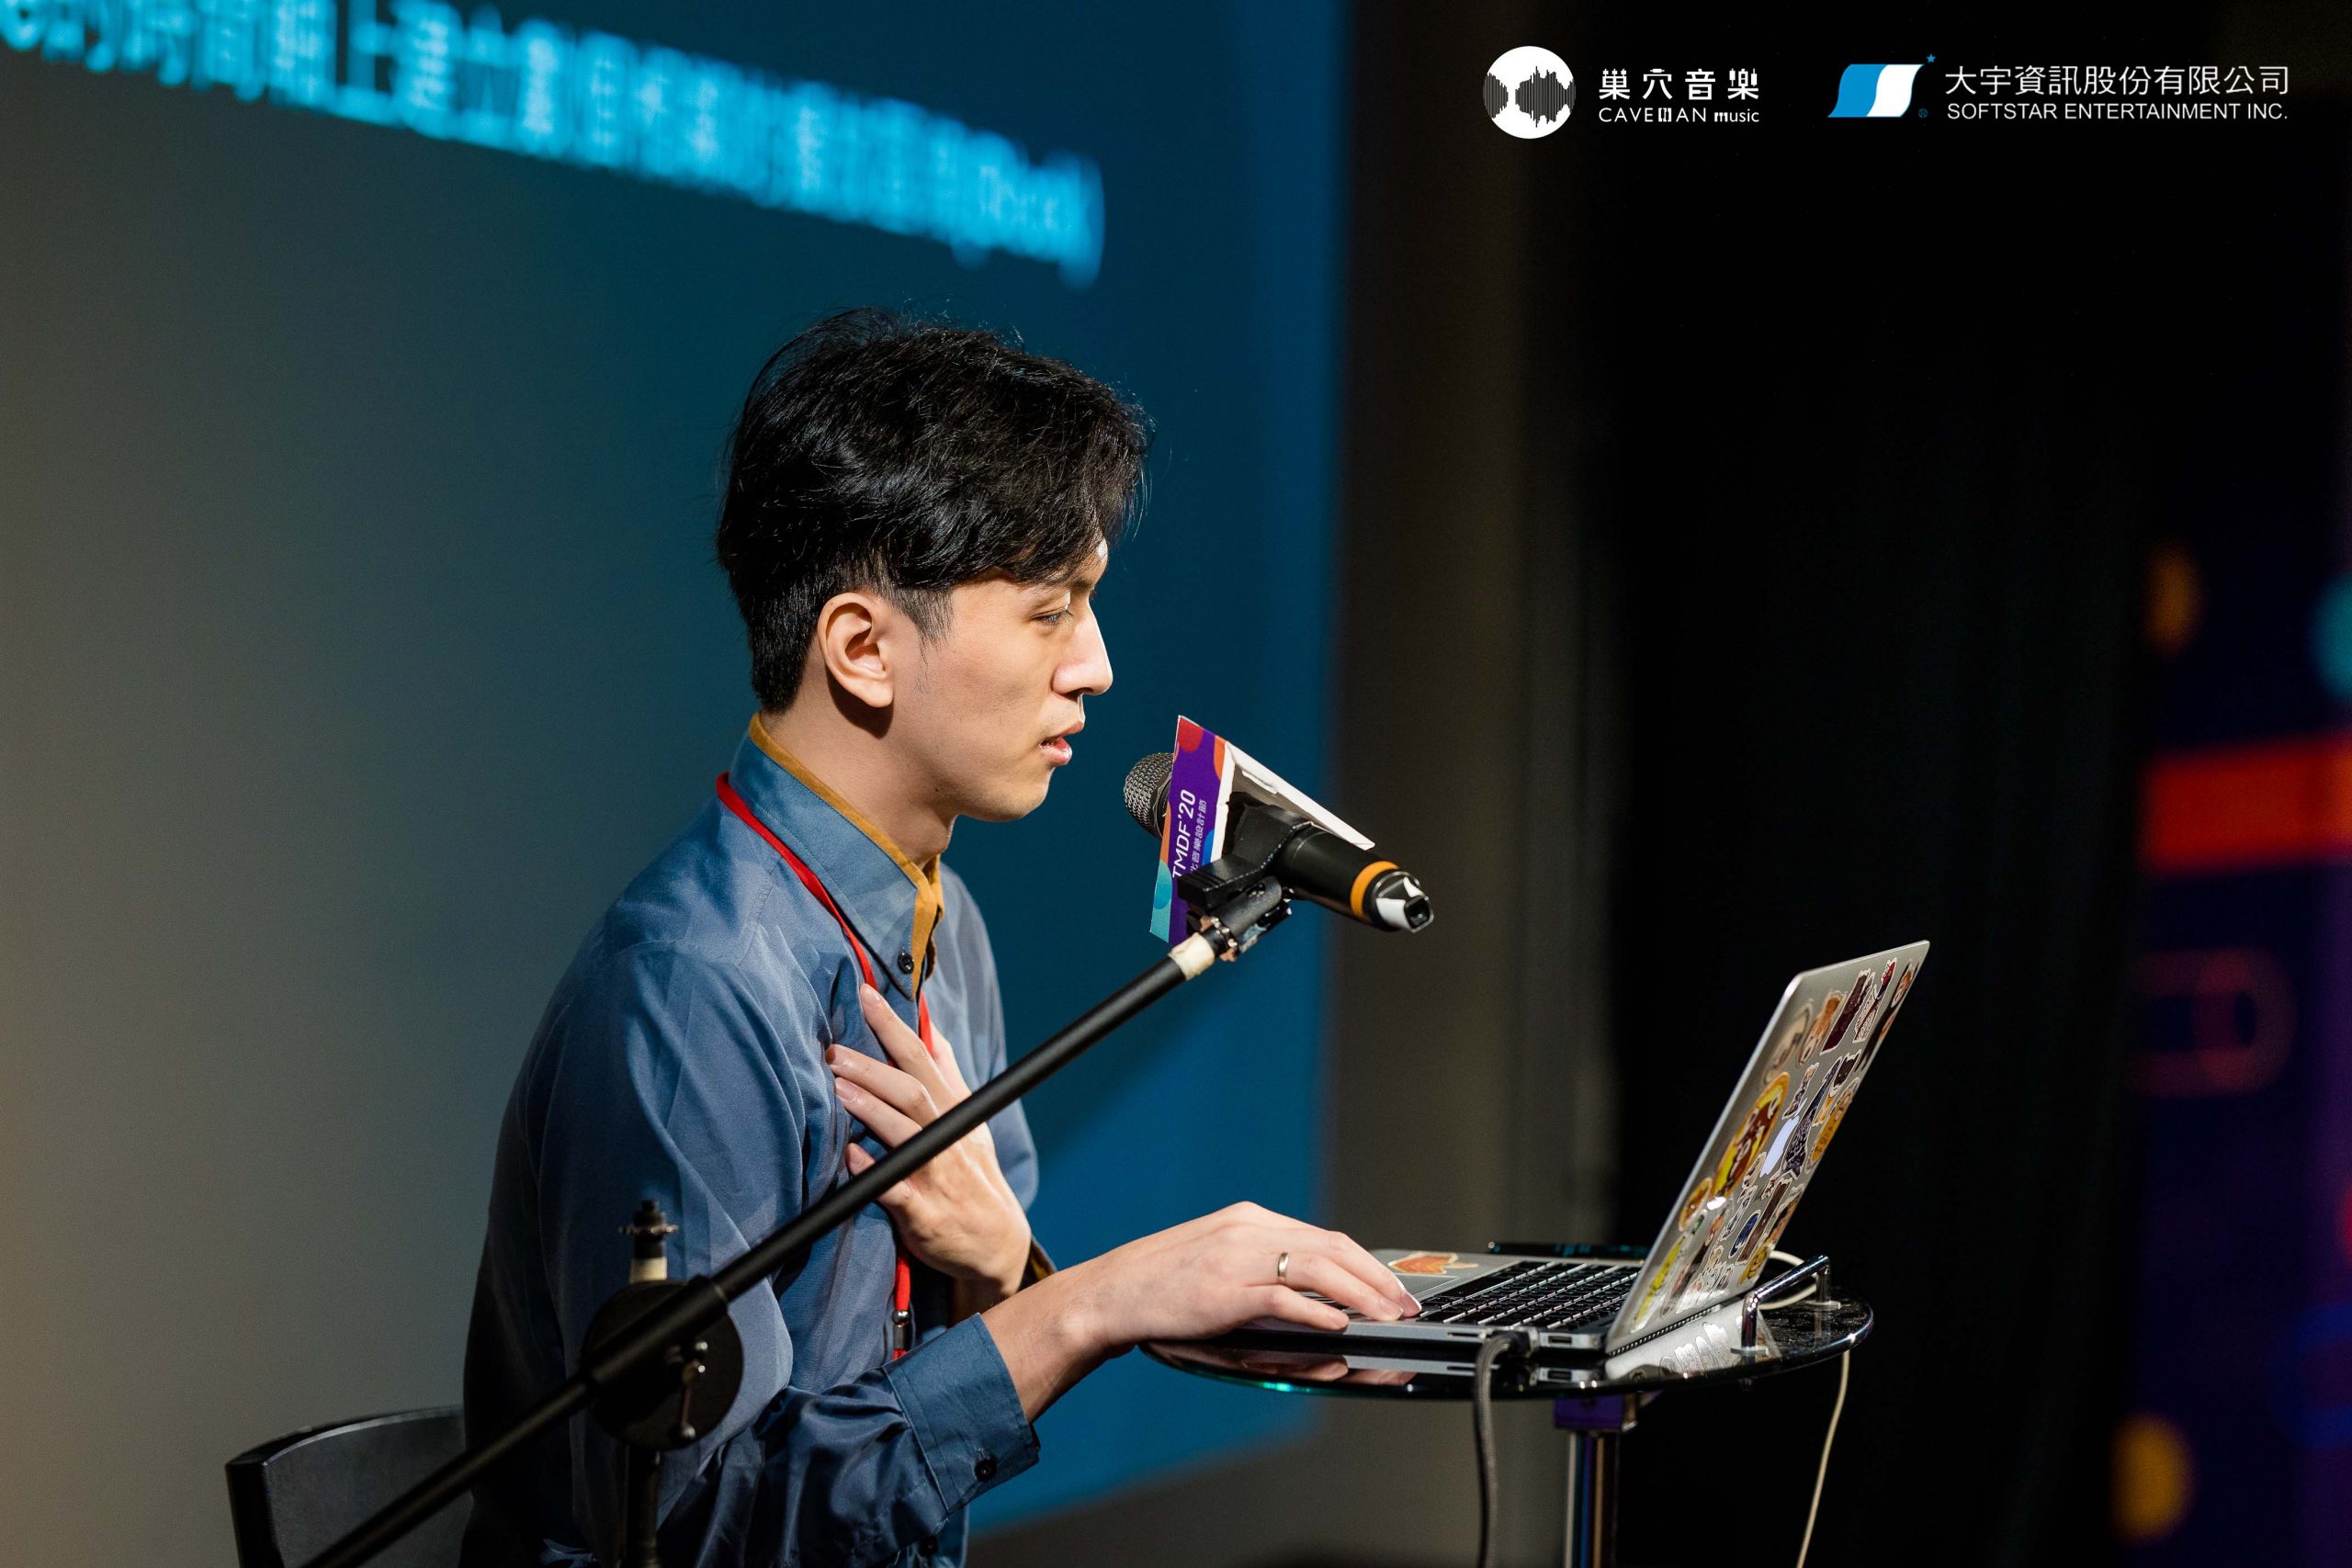 甯承信曾受邀擔任台北音樂設計節講者。